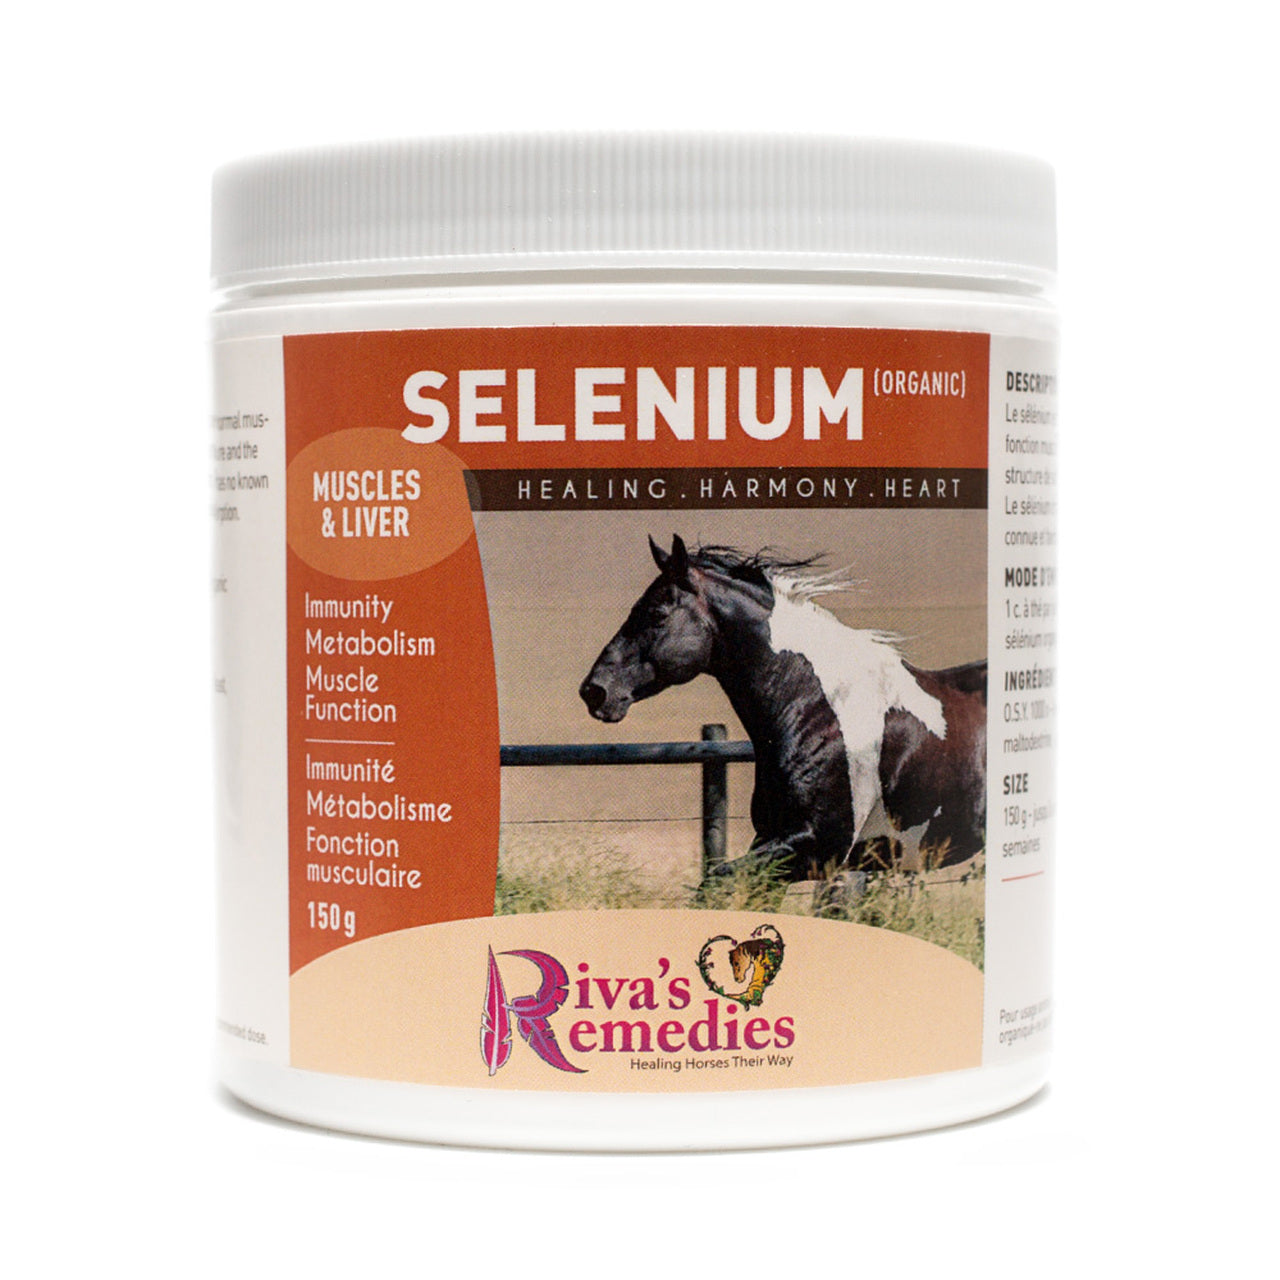 Riva's Remedies Equine Organic Selenium - 1kg